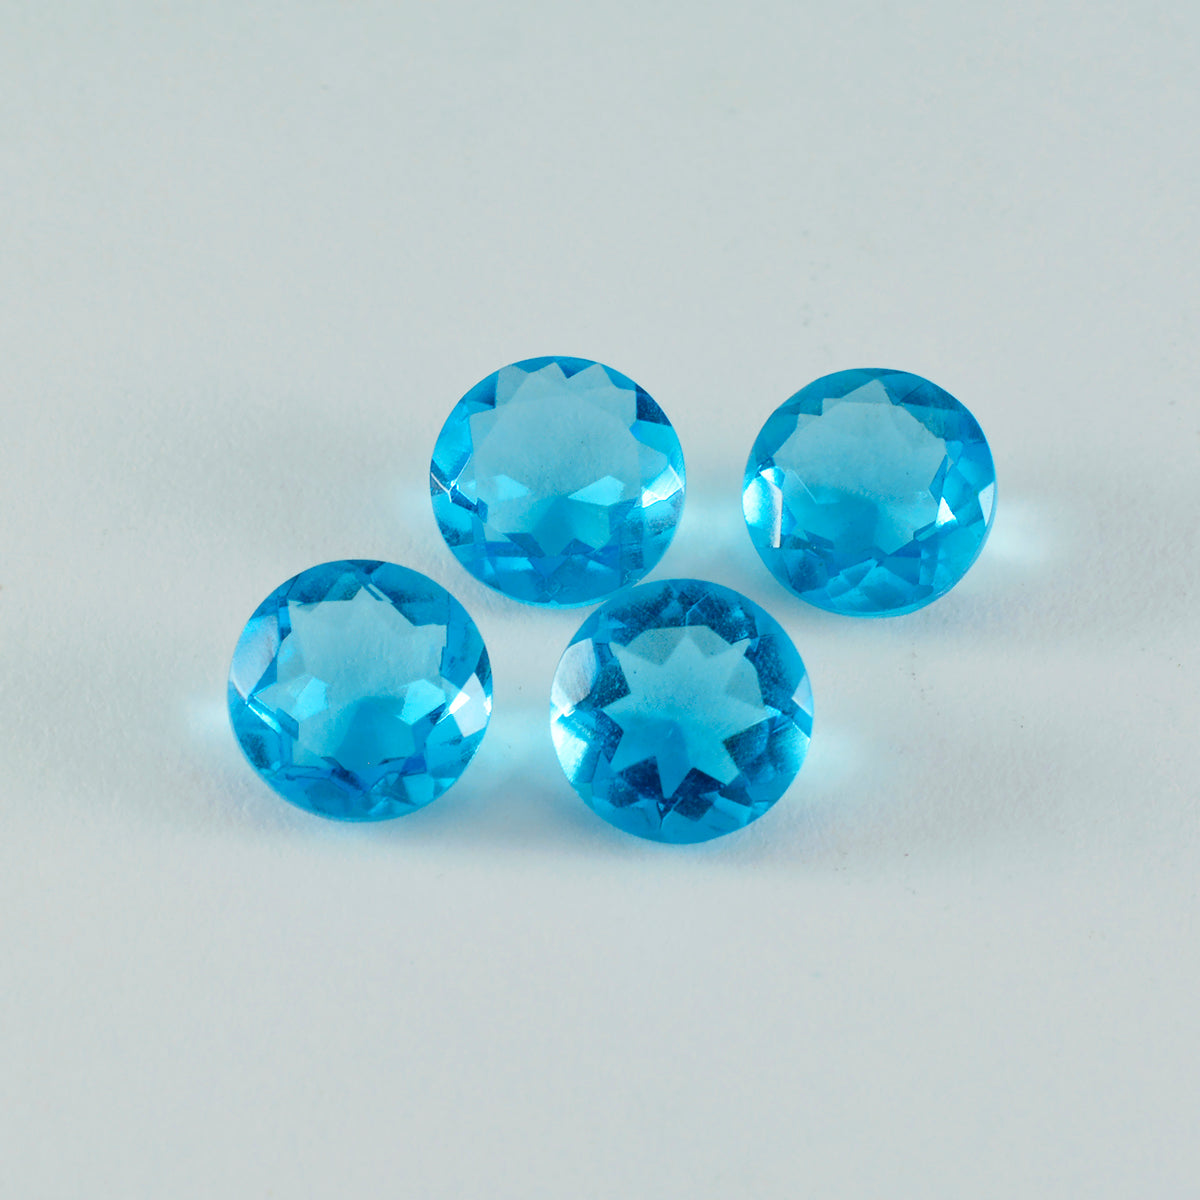 Riyogems 1 pieza de topacio azul CZ facetado 0.472 x 0.472 in forma redonda A+ calidad piedra preciosa